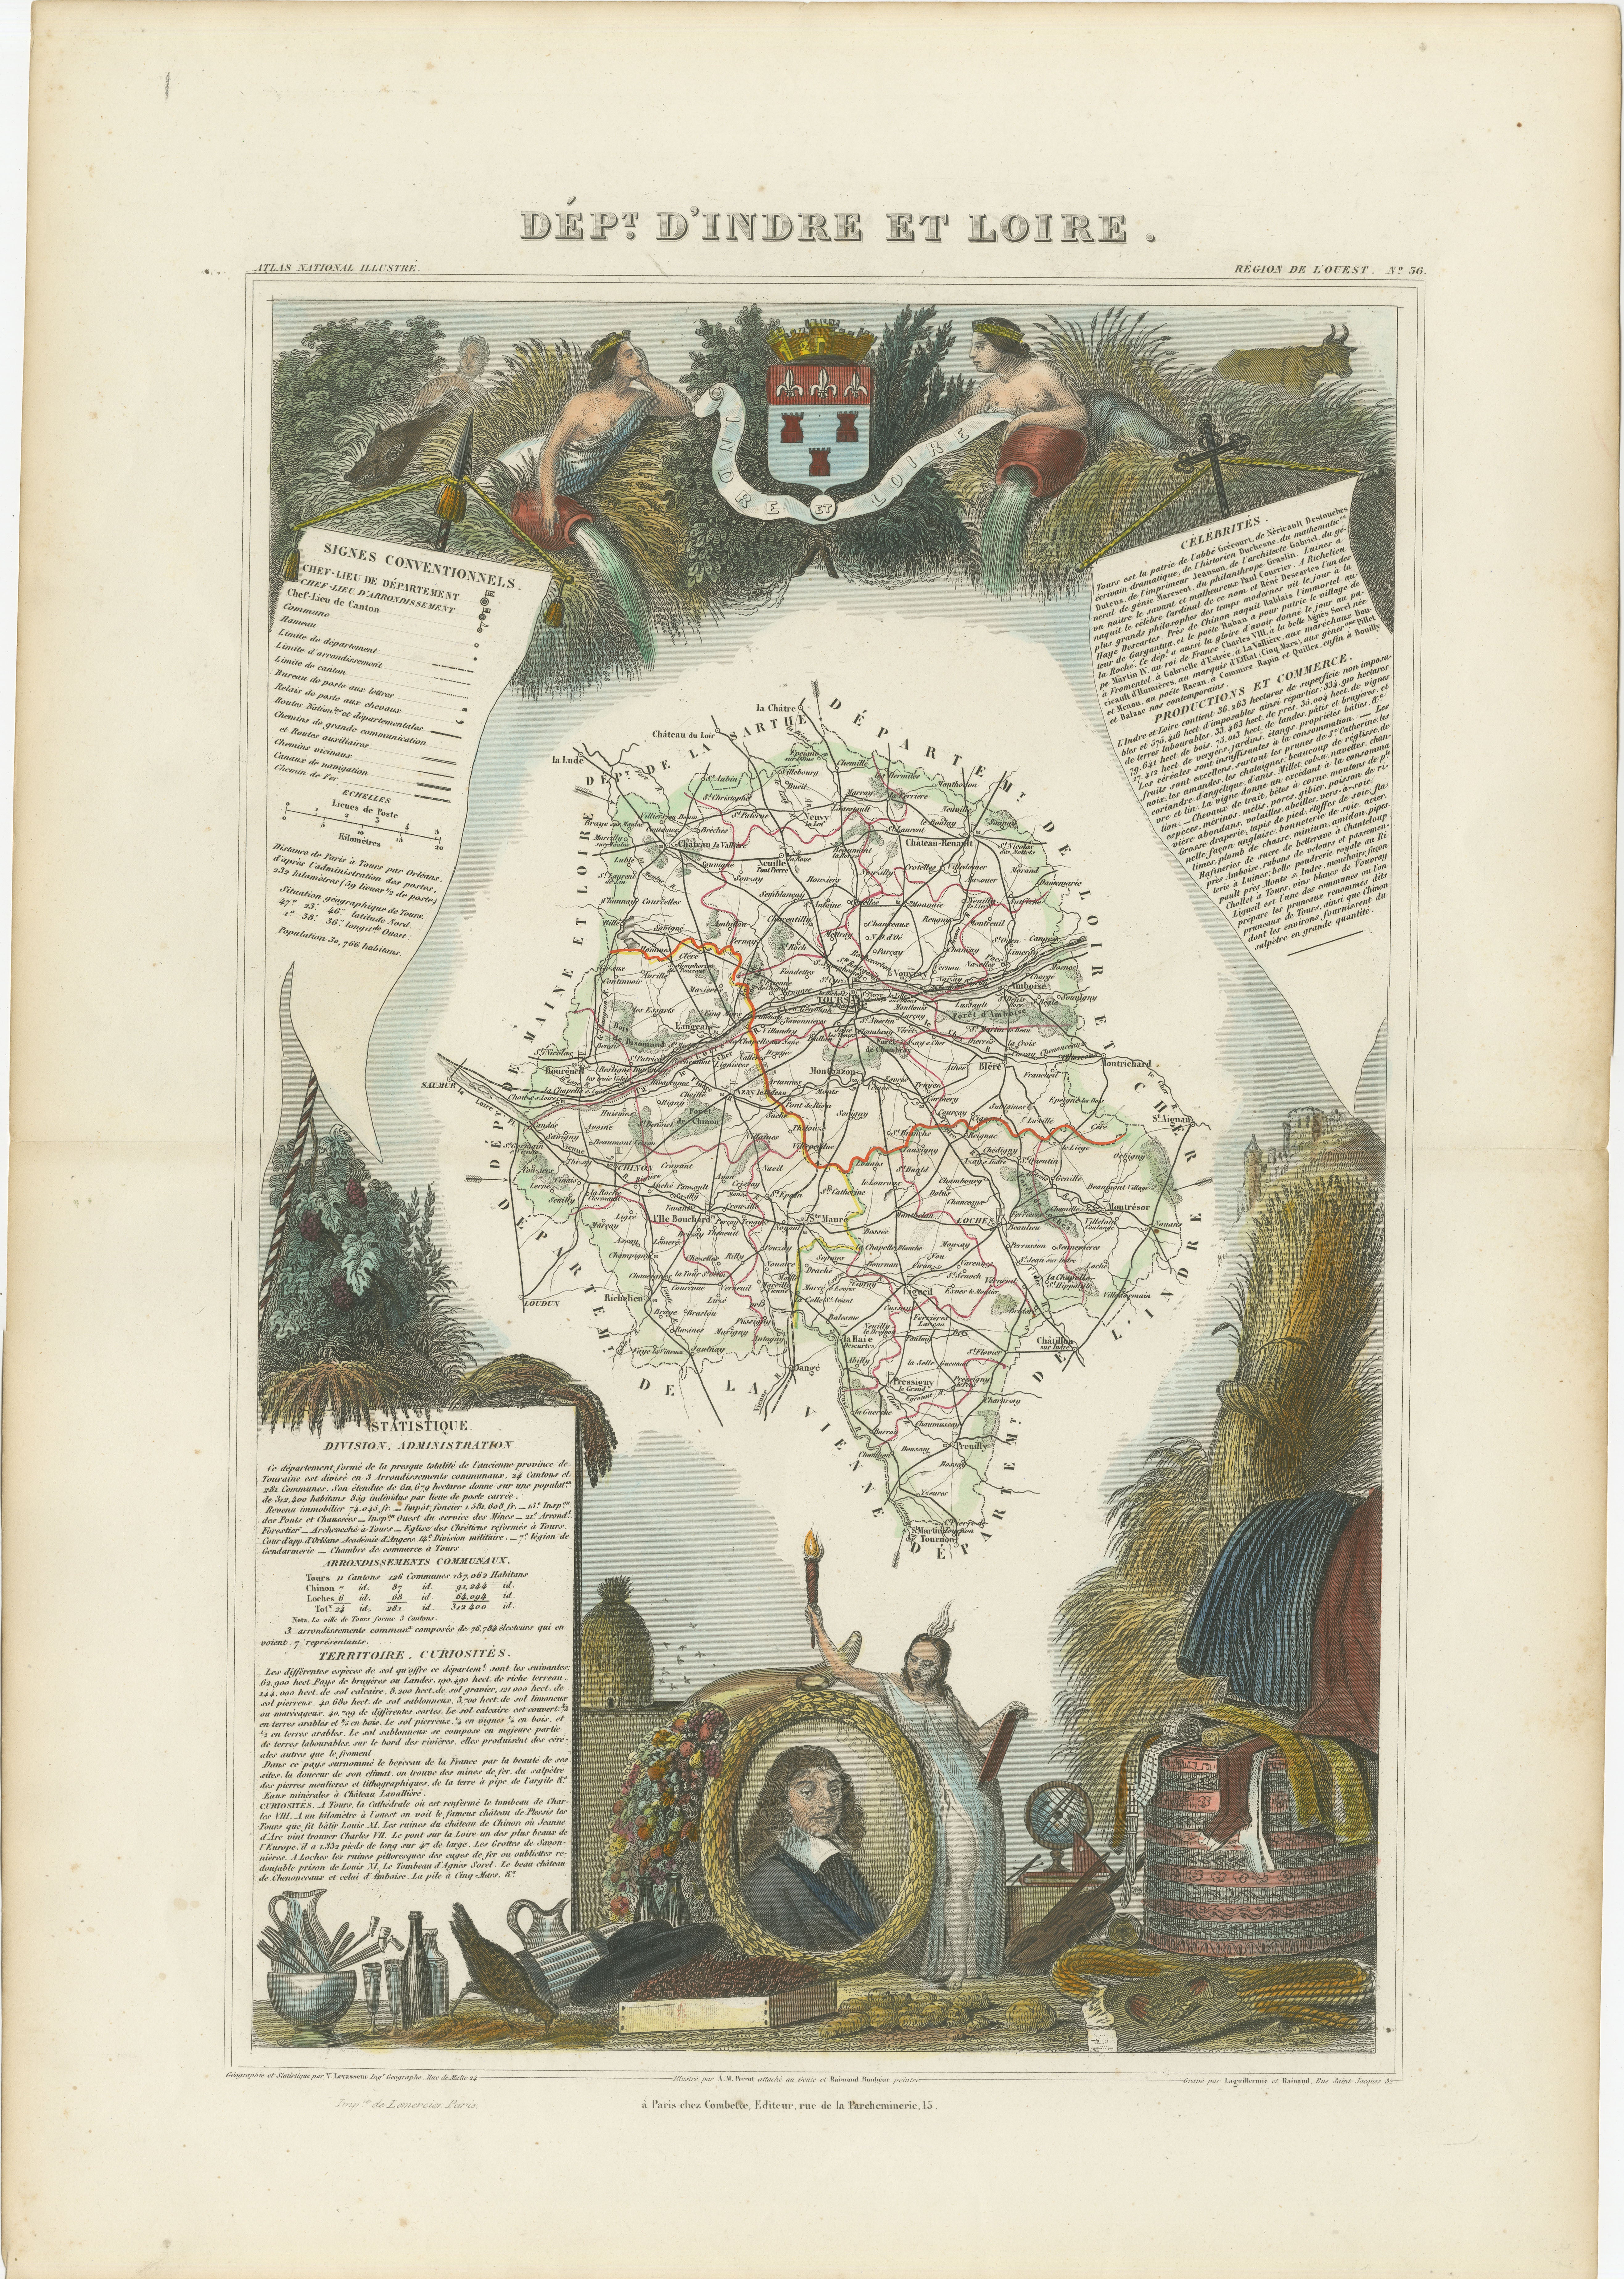 Eine originale handkolorierte Karte des Département d'Indre-et-Loire von Victor Levasseur aus dem Jahr 1856. Als antike Stahlstichkarte zeigt sie die detaillierte Handwerkskunst und Technologie der Kartenherstellung aus der Mitte des 19.